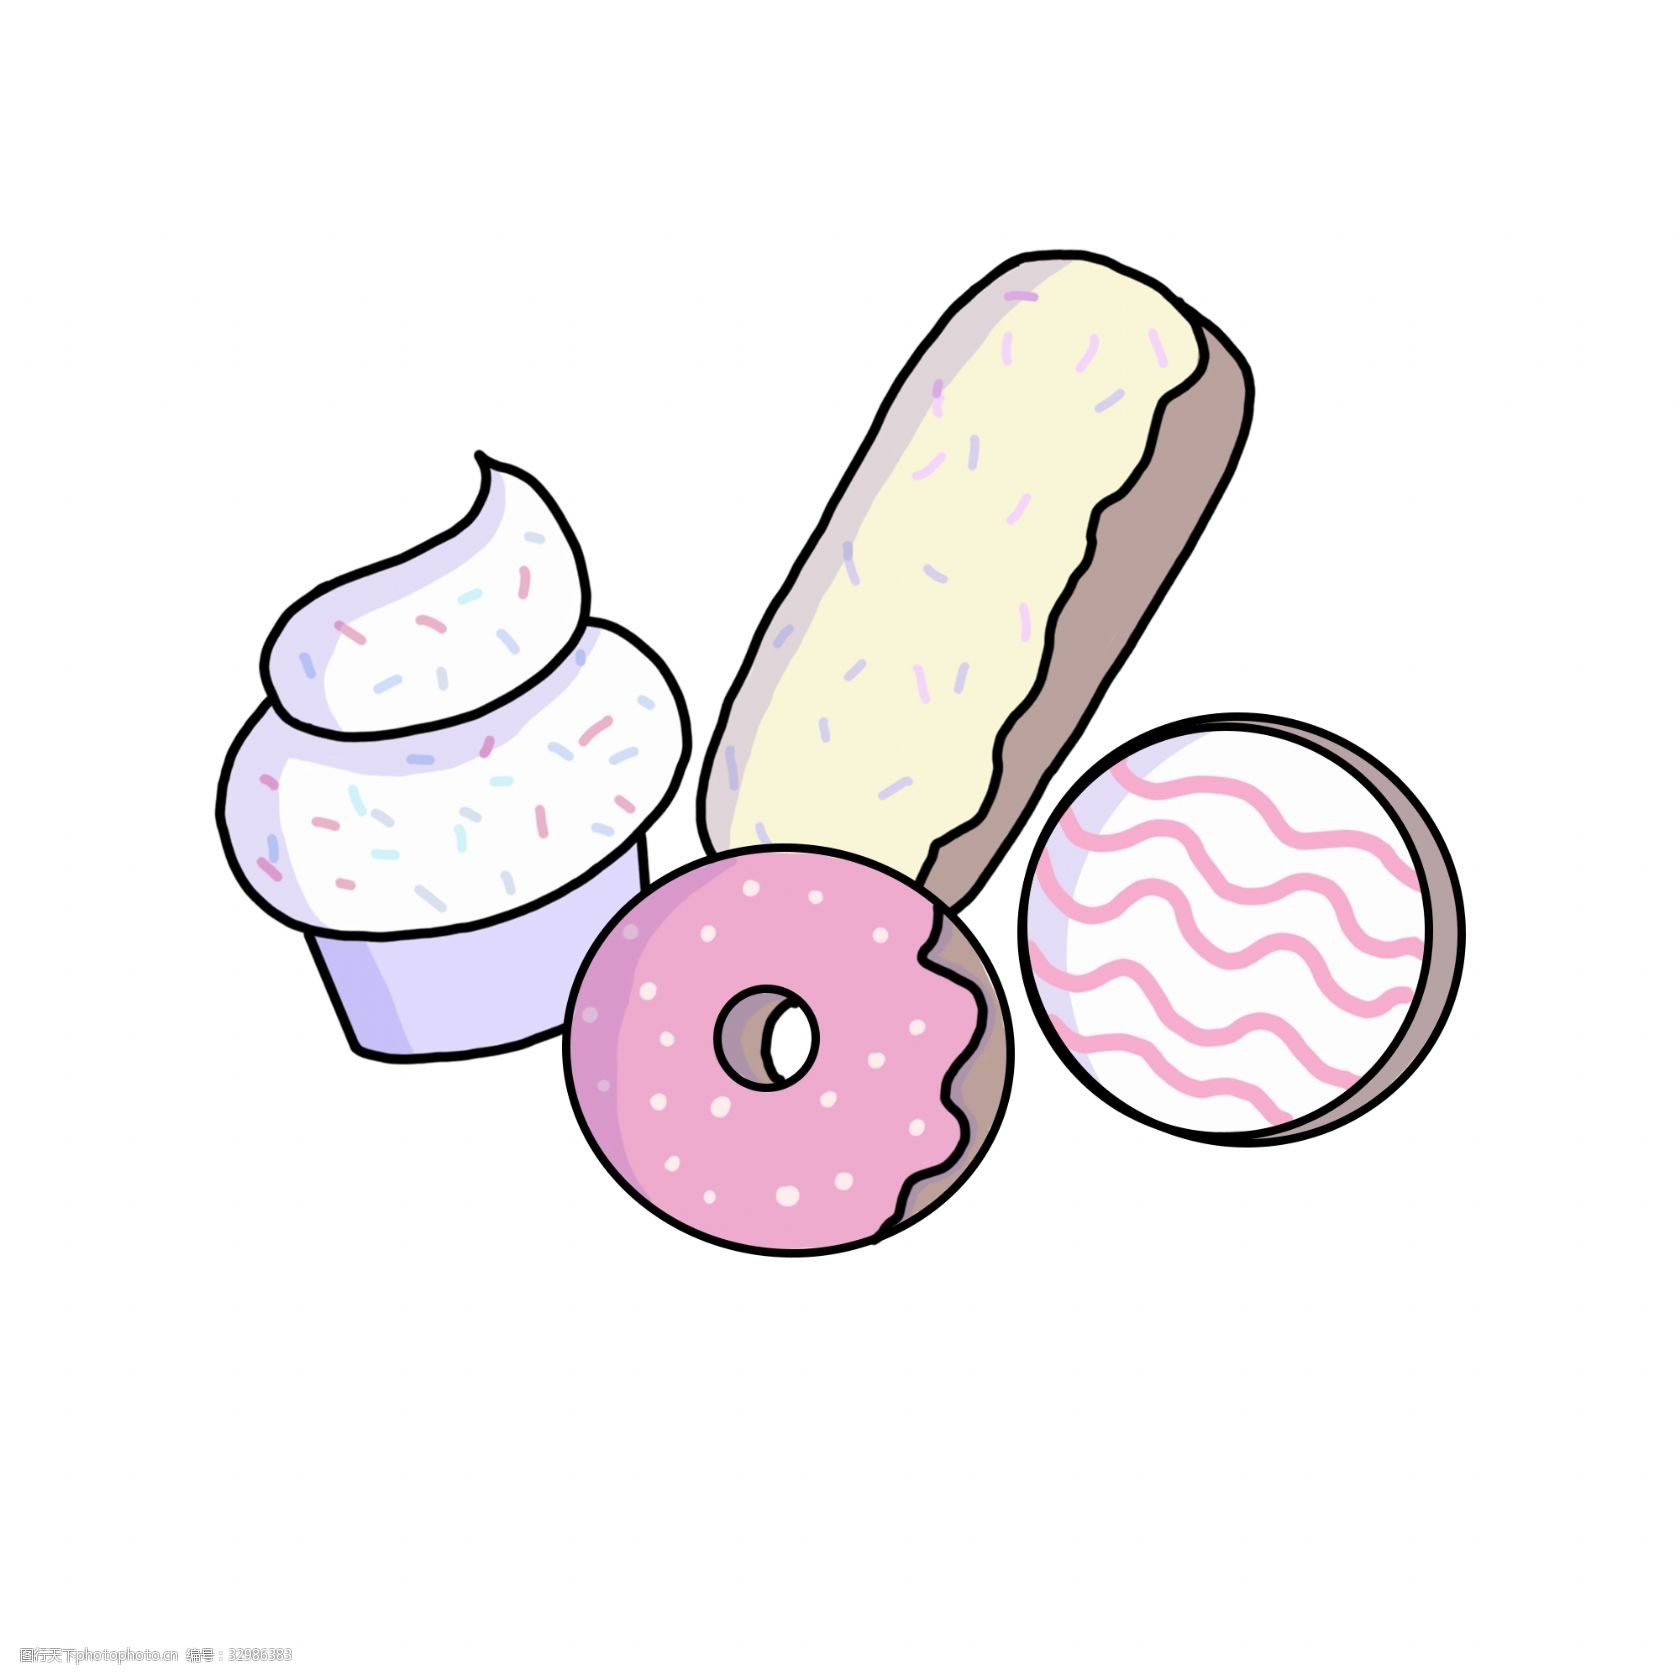 关键词:精美的美味甜点插画 美味的甜点 甜食插画 甜甜圈 甜筒 卡通